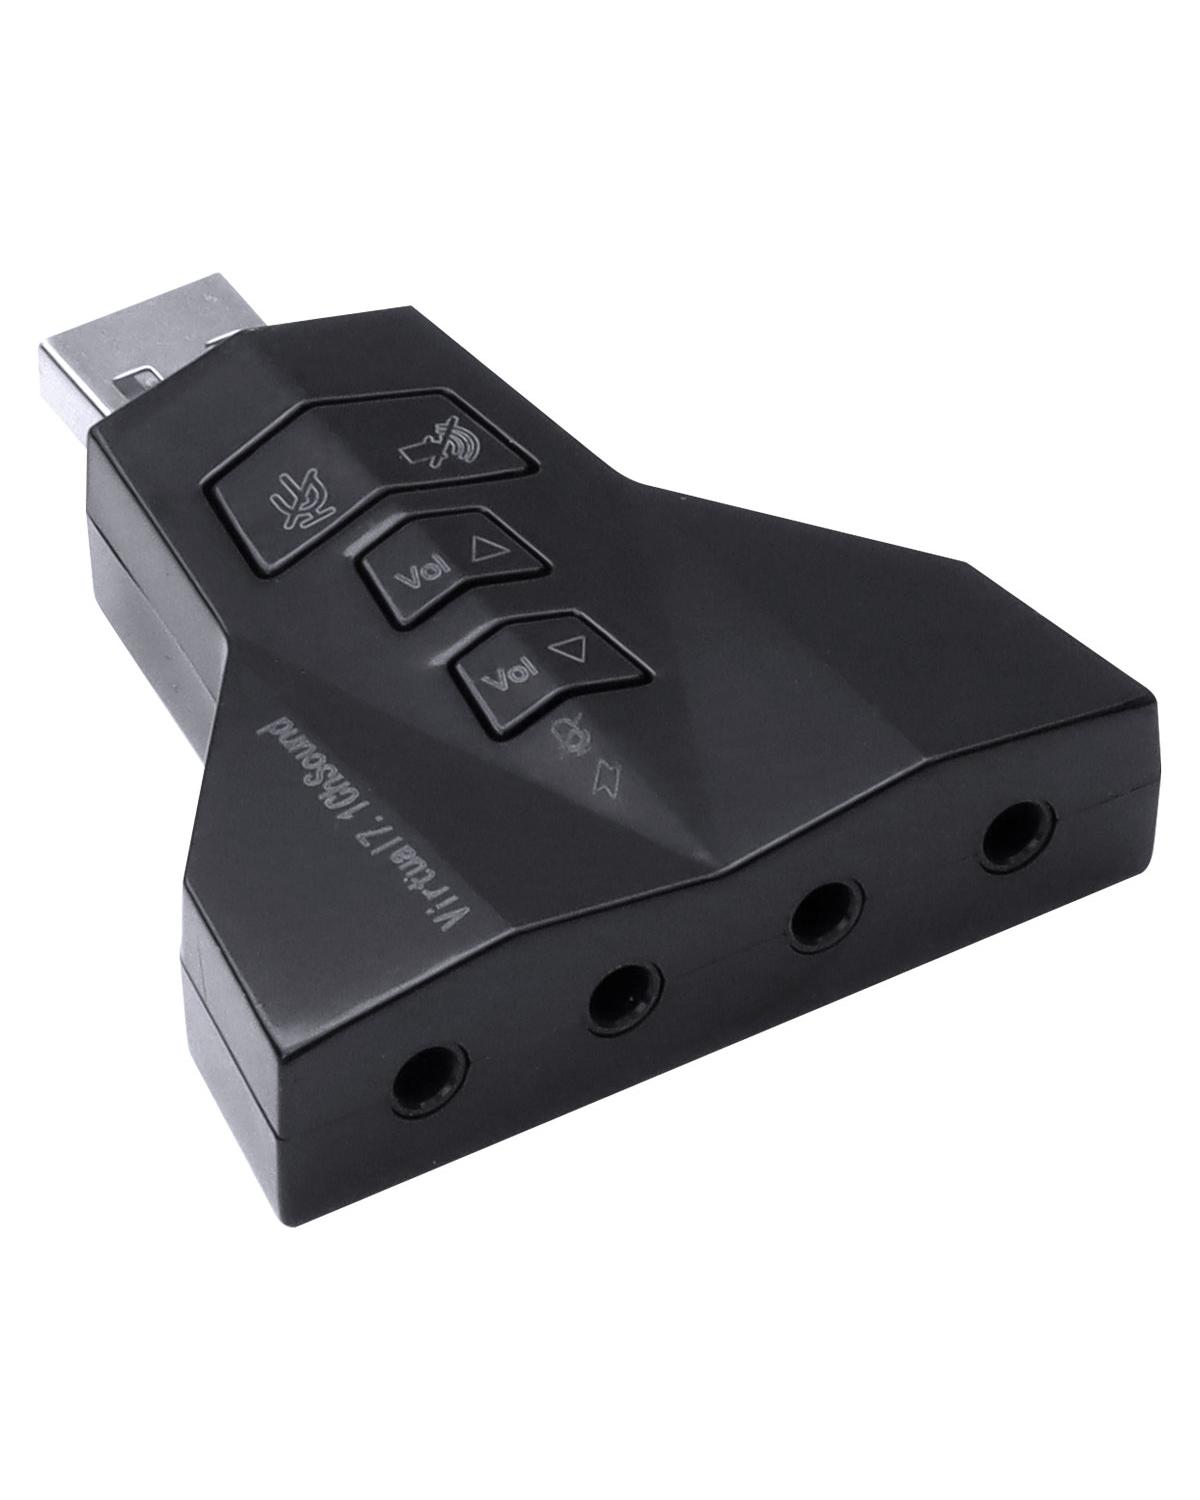 ADAPTADOR PLACA DE SOM USB 4 PORTAS P2 - COMPATIVEL COM PS3 - A4PUSBM